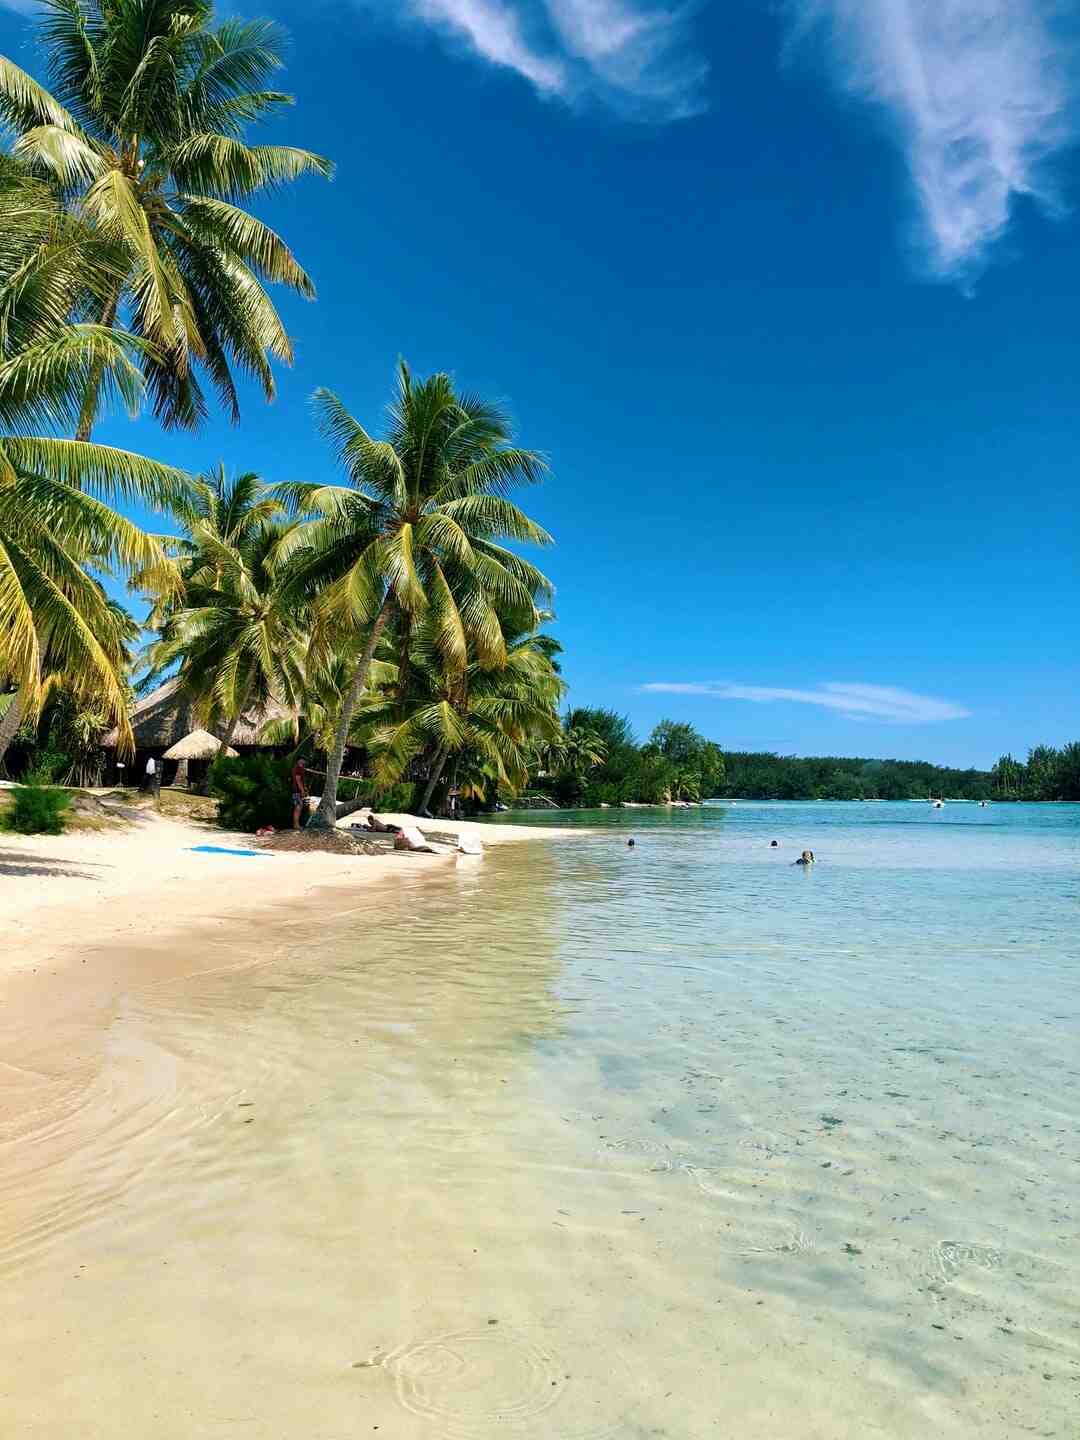 Comment faire pour aller à Tahiti ?